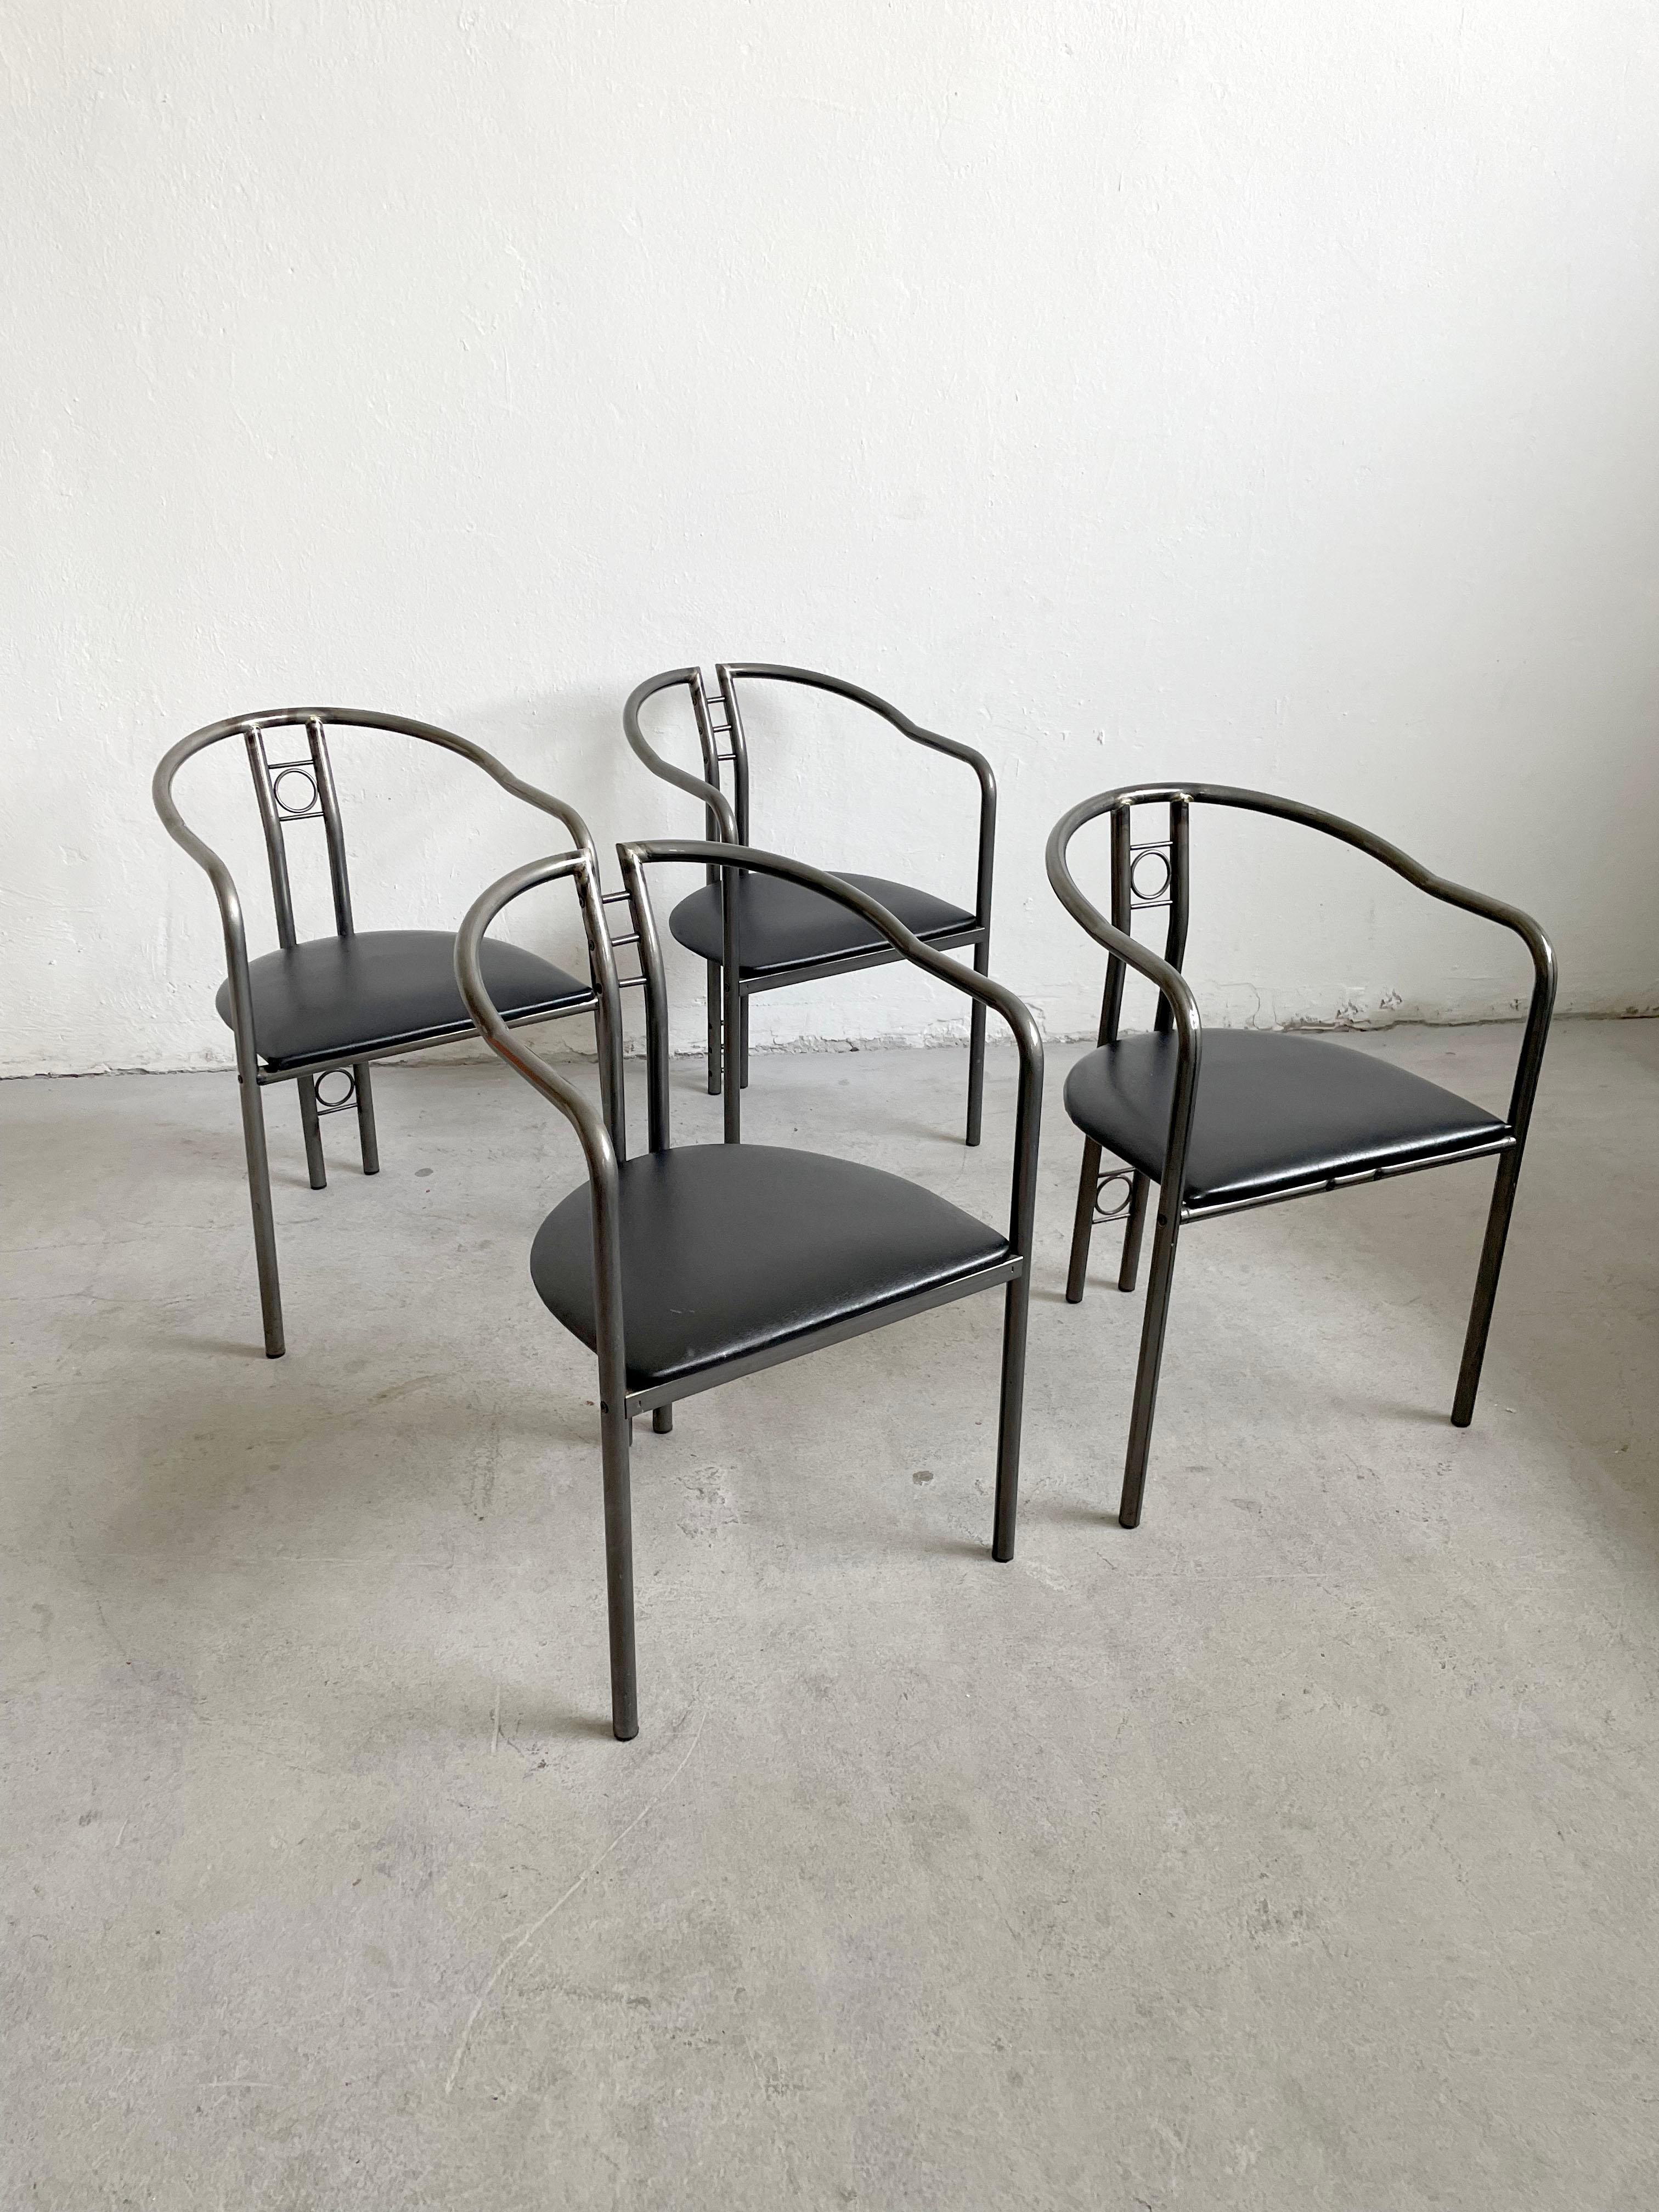 Chaises de salle à manger post-modernes belges des années 1980, magnifiquement fabriquées et conçues, ensemble de 4.

Châssis en laiton avec assise recouverte de similicuir noir

Les chaises sont en très bon état vintage avec des traces mineures